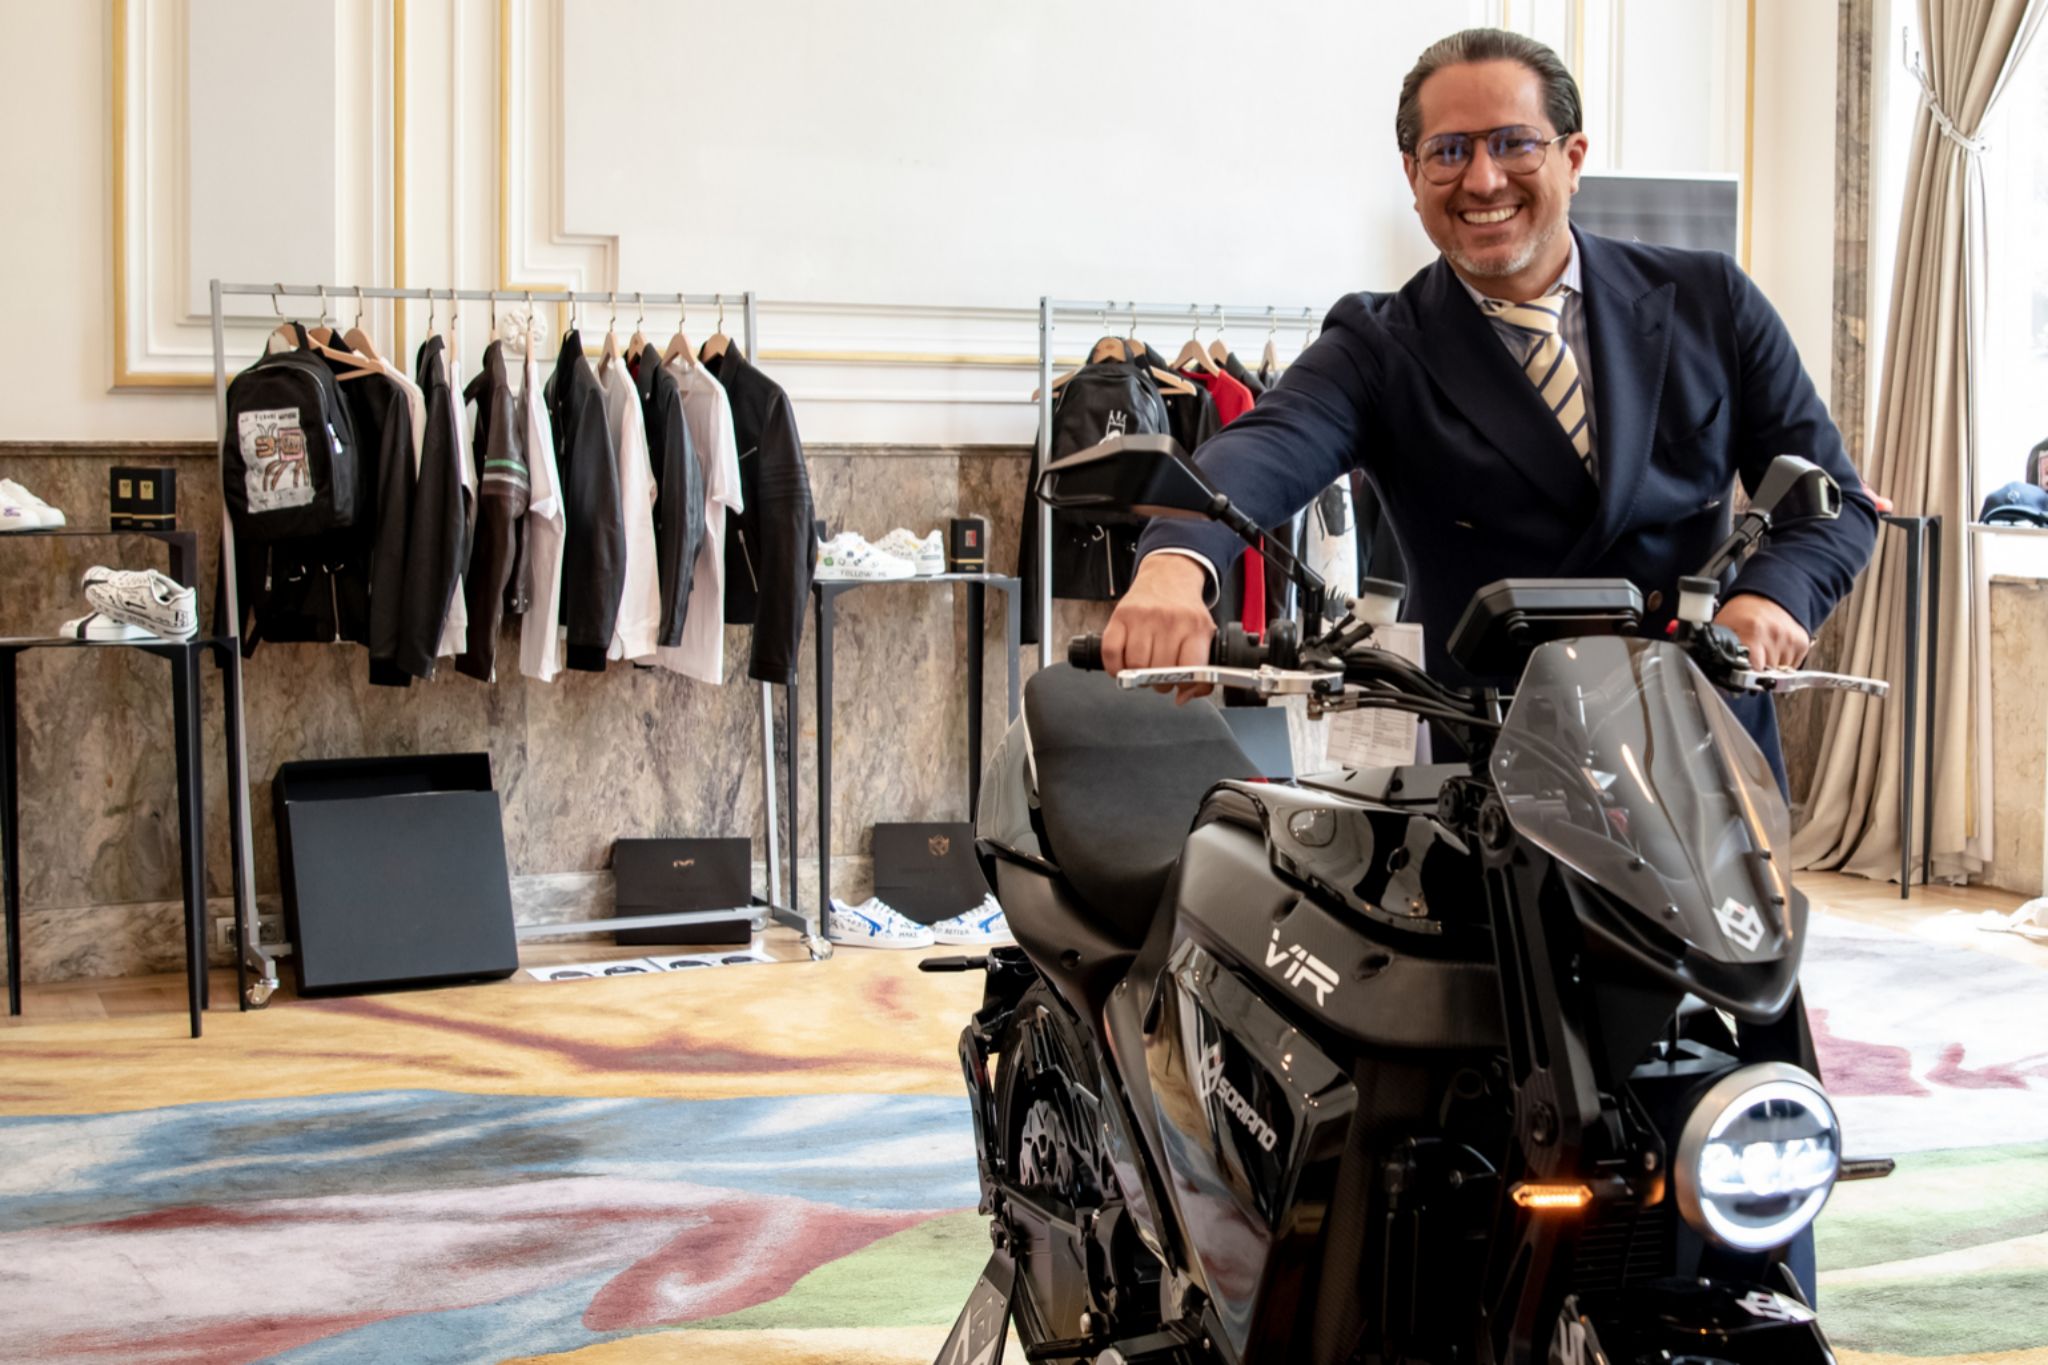 Soriano Motori Corp. también ha lanzado la colección de moda, "Attitude", que cuenta con piezas únicas pintadas a mano por diferentes artistas. Las prendas están basadas en la cultura de la
moto.